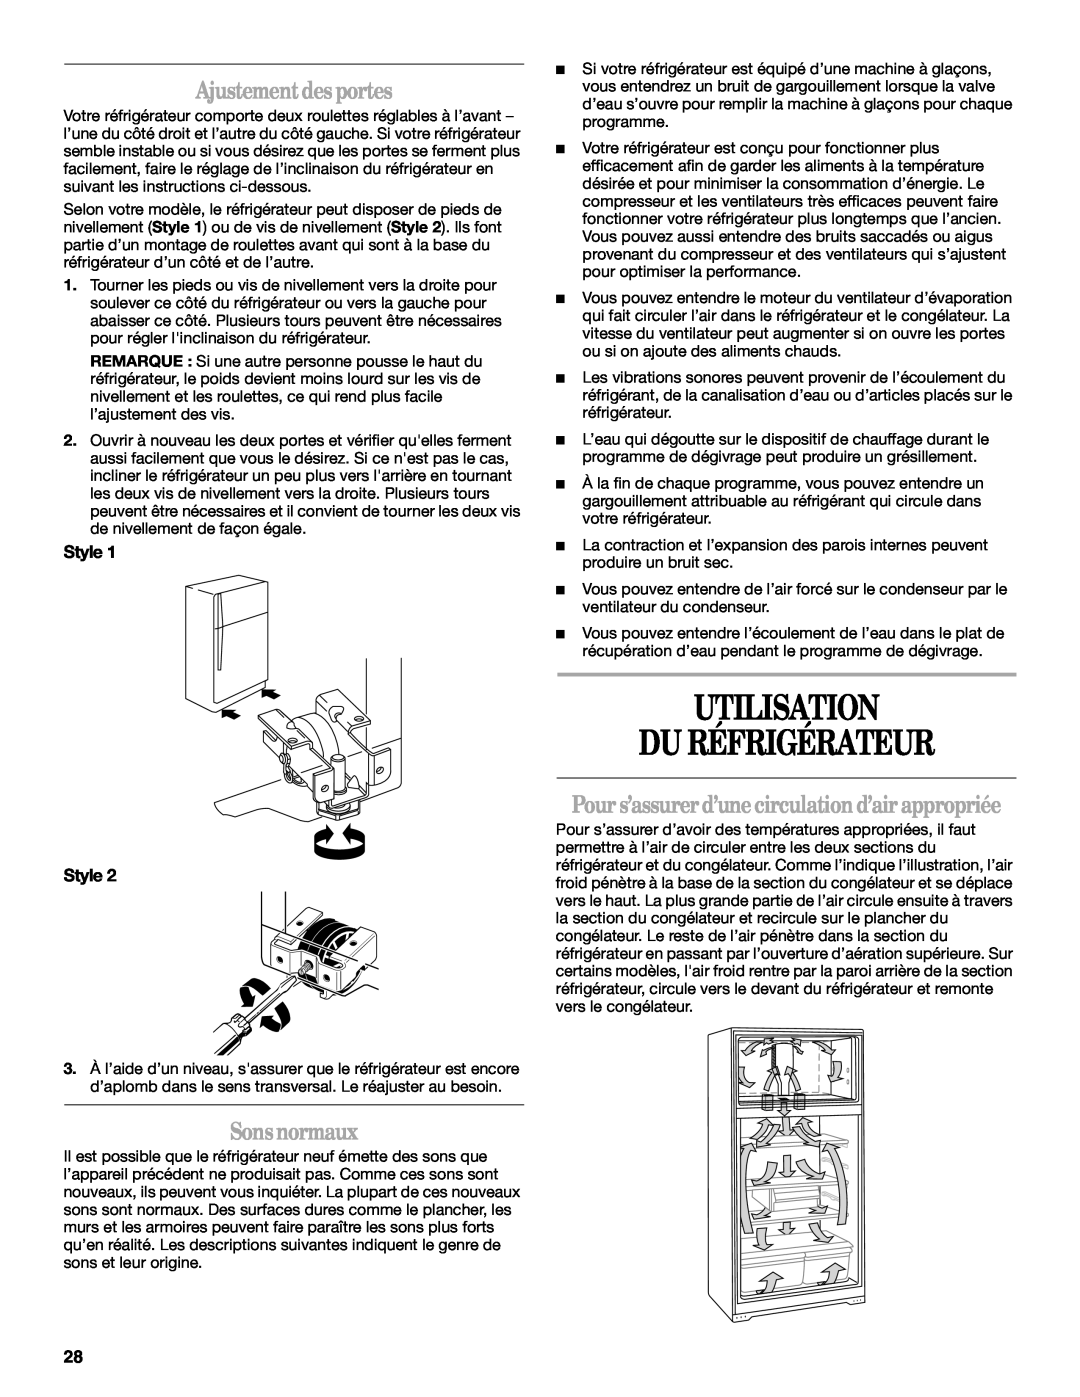 Amana W10154917A manual Utilisation Du Réfrigérateur, Ajustement desportes, Sonsnormaux, Style Style 